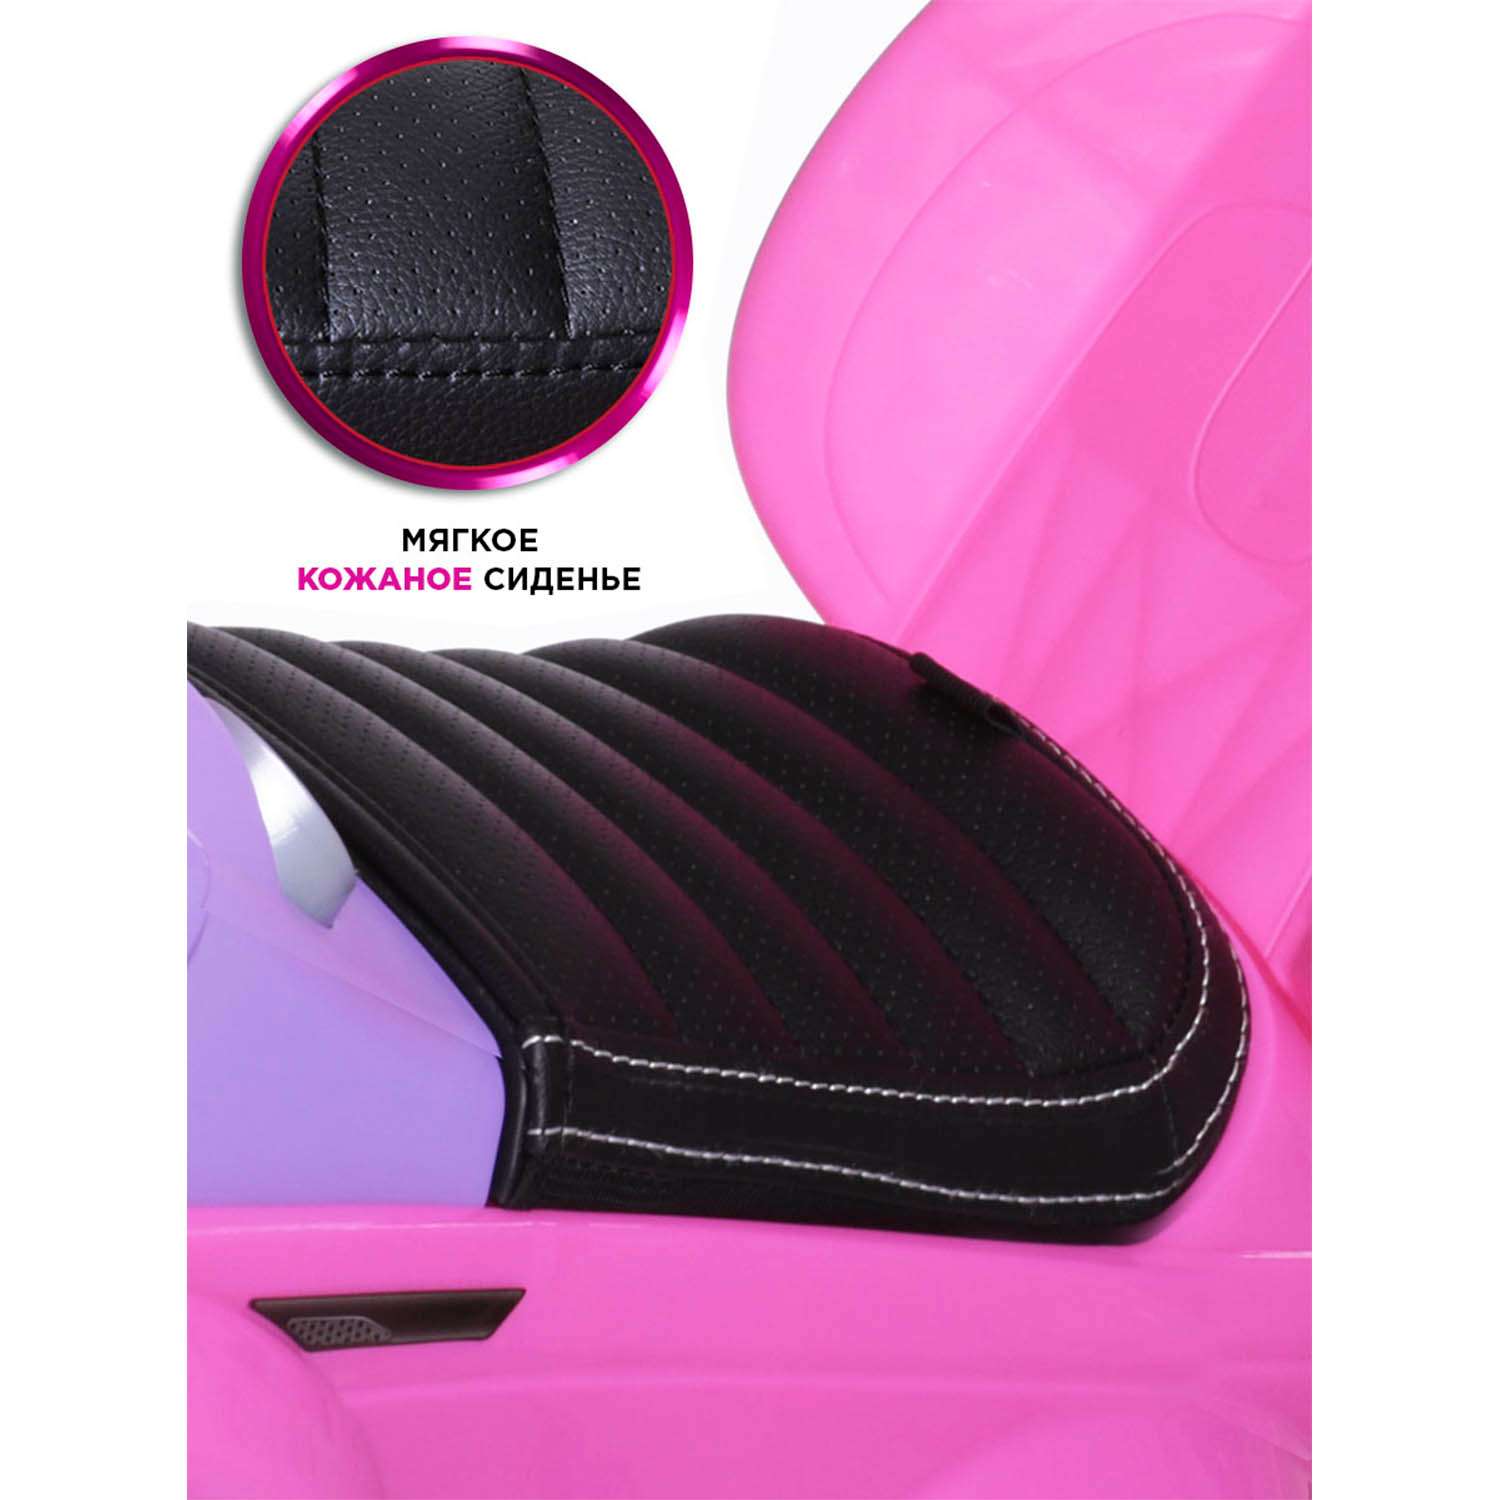 Каталка BabyCare Sport car кожаное сиденье розовый - фото 3